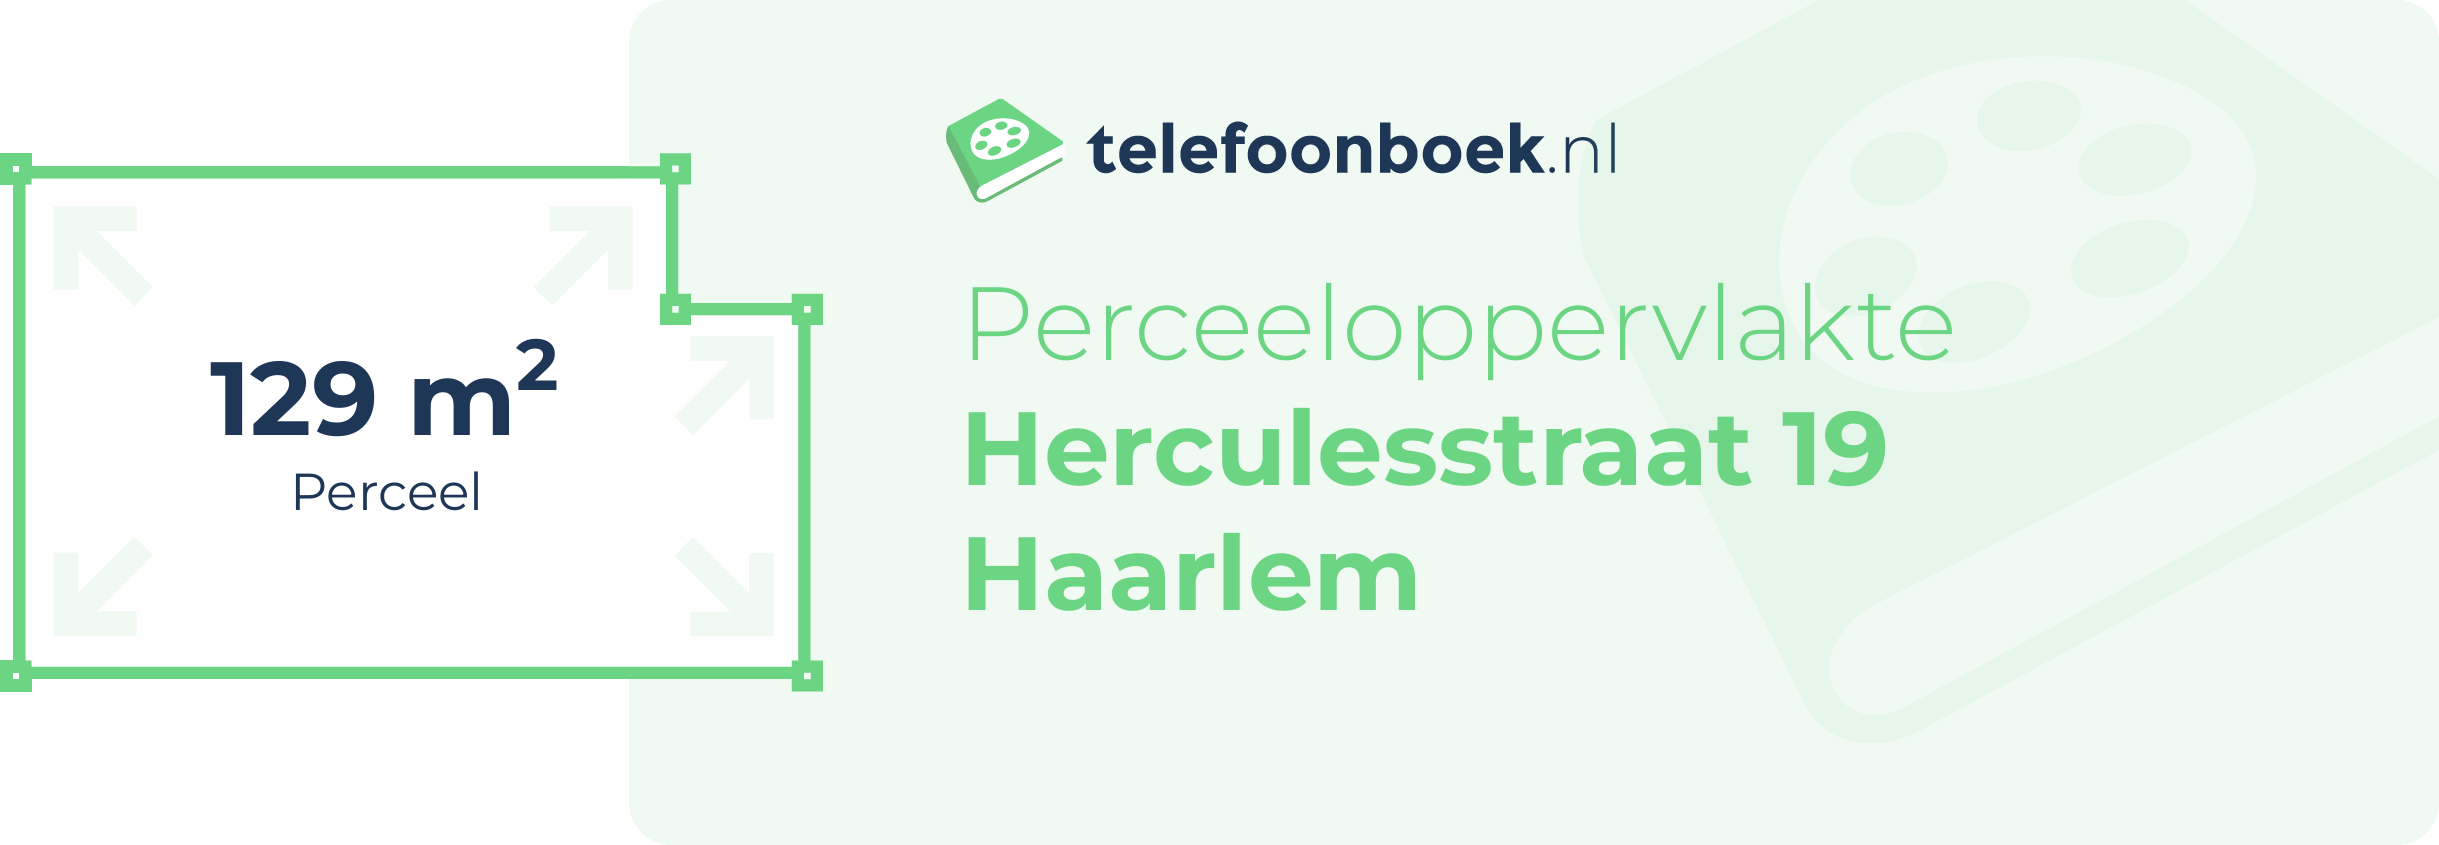 Perceeloppervlakte Herculesstraat 19 Haarlem